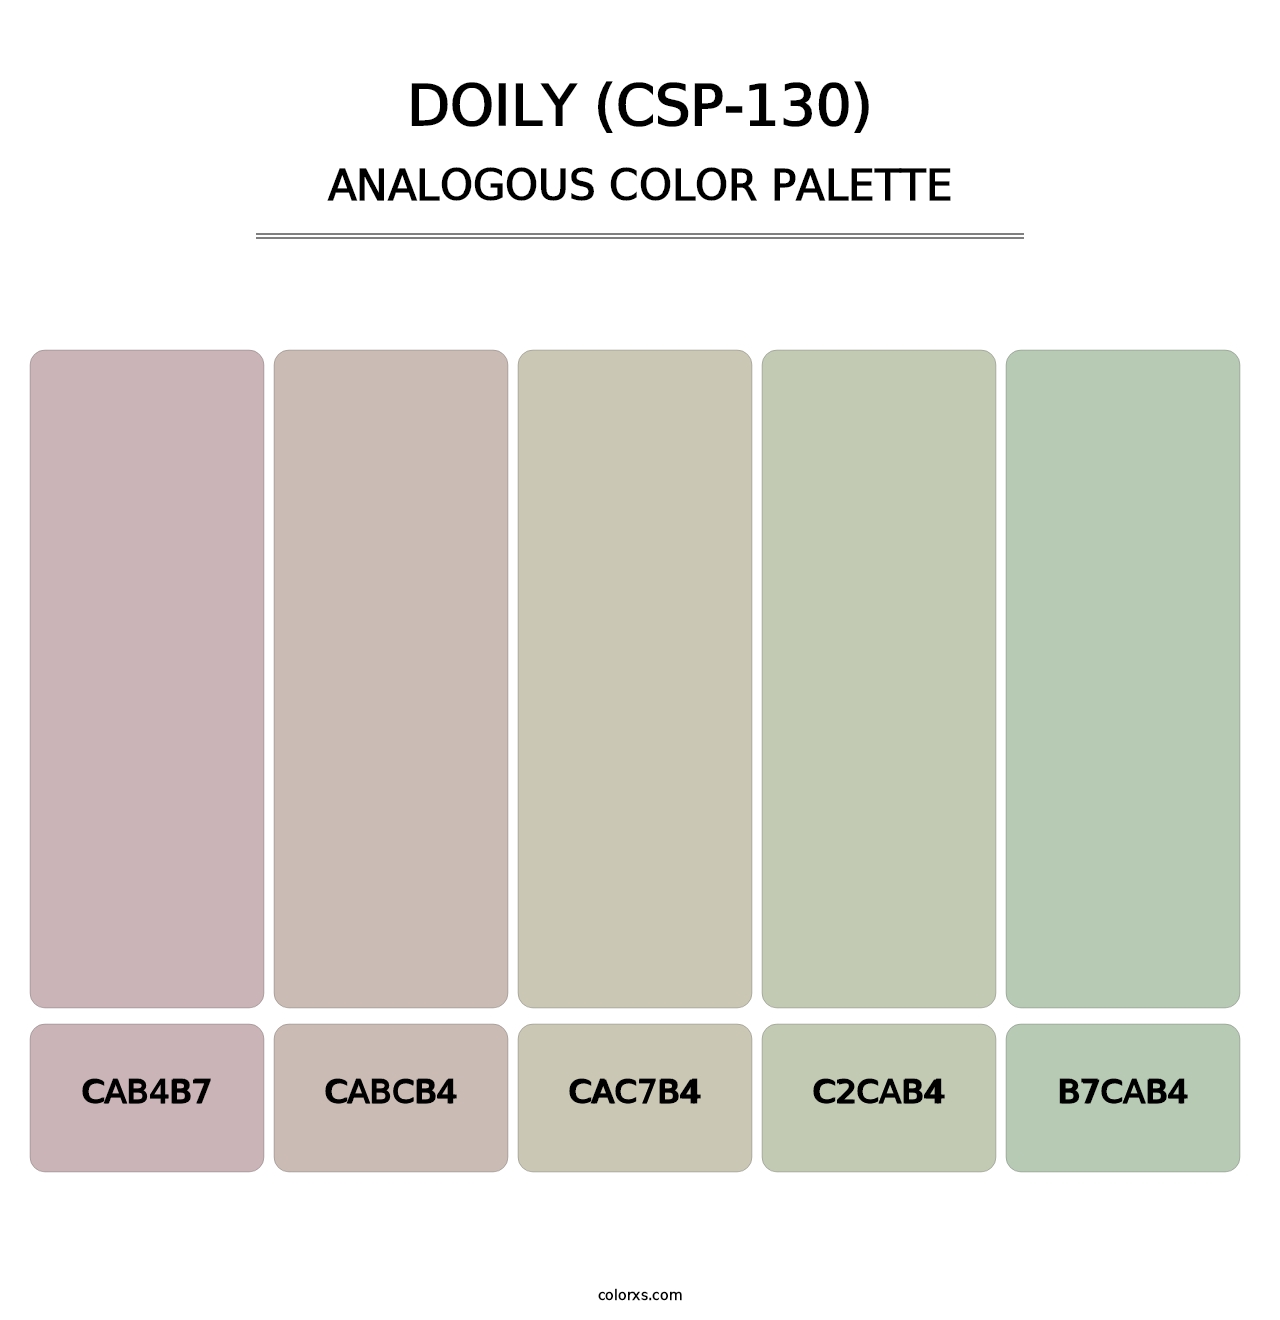 Doily (CSP-130) - Analogous Color Palette